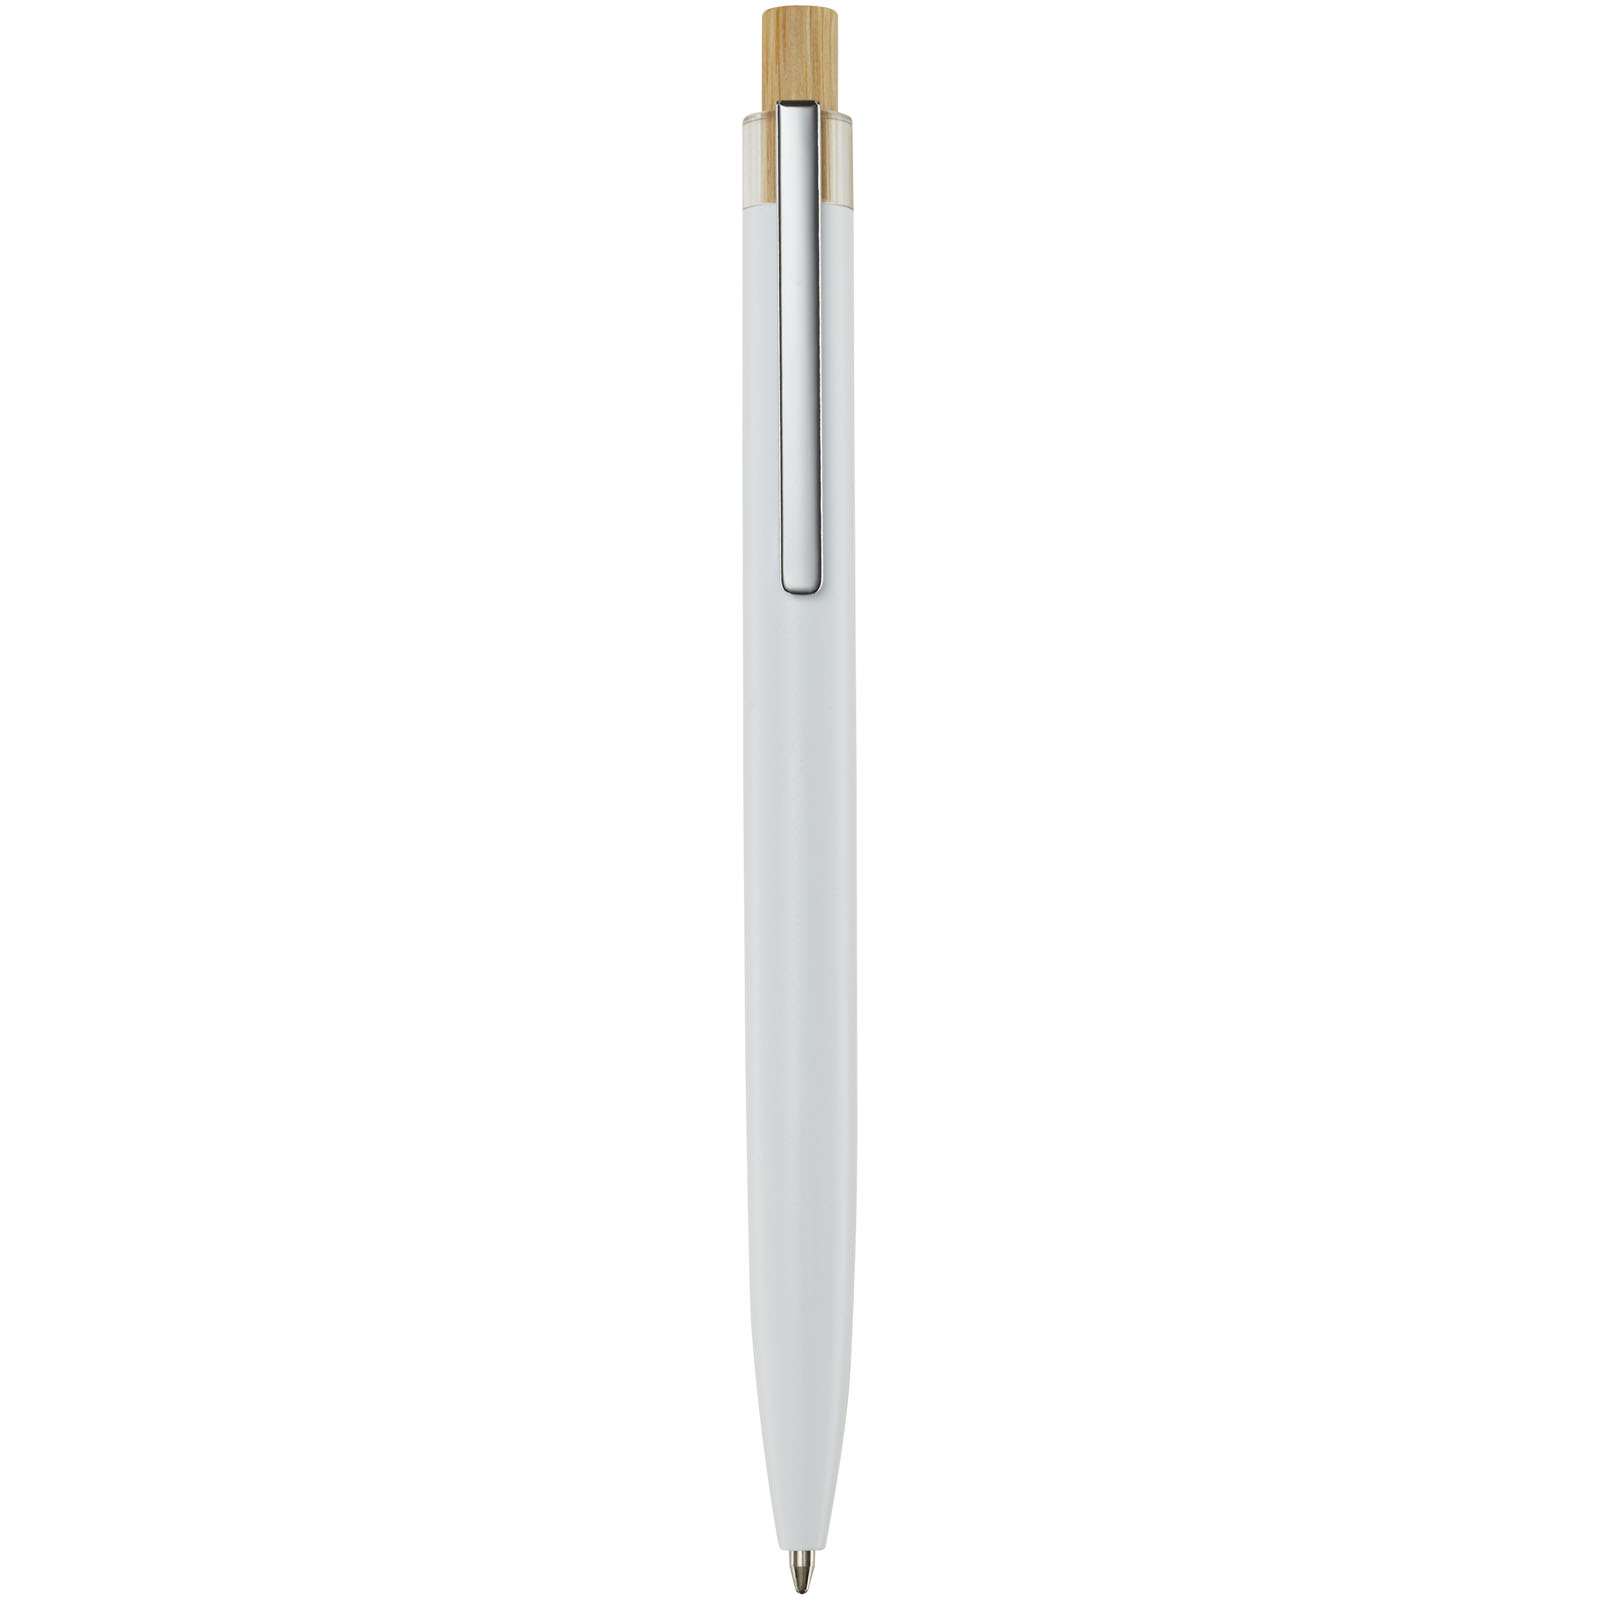 Advertising Ballpoint Pens - Nooshin recycled aluminium ballpoint pen